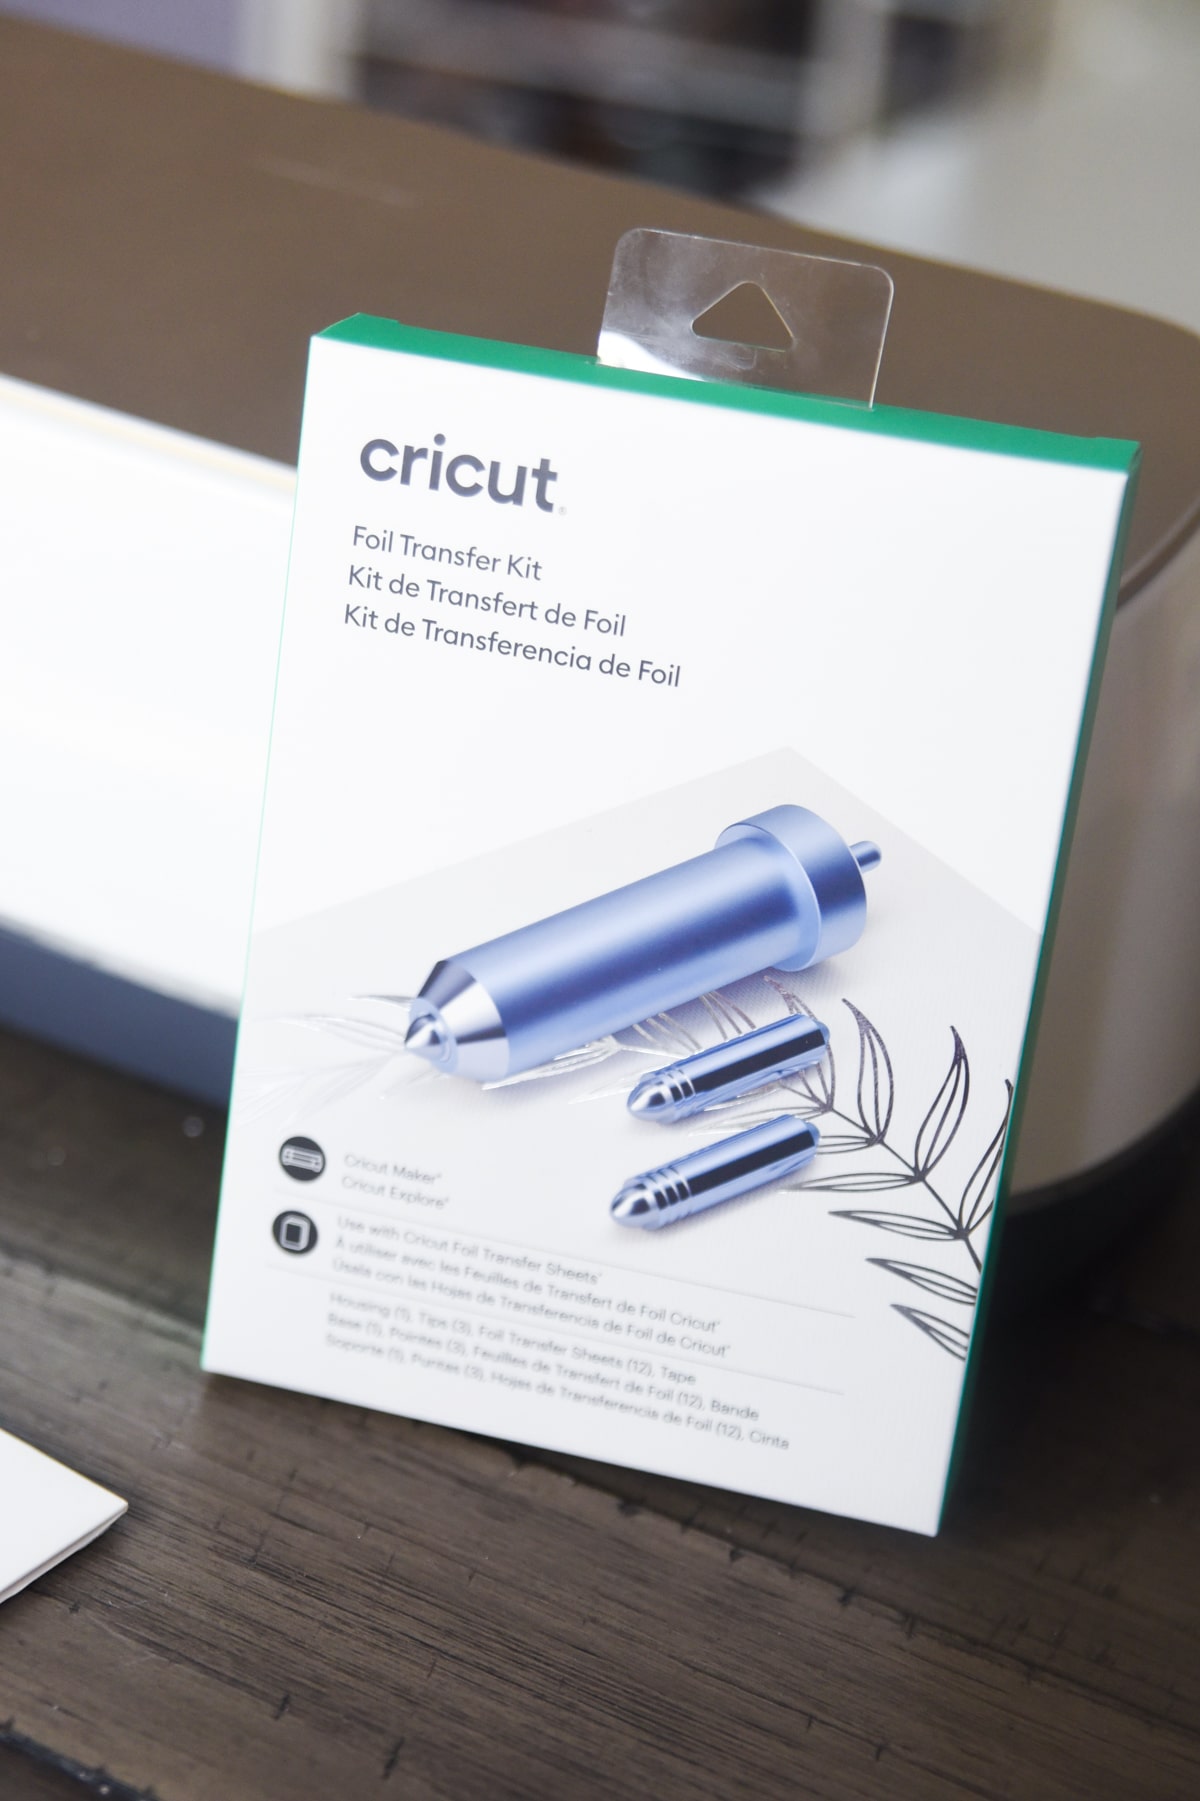 CRICUT Foil Transfer Tool Kit 3 Tips